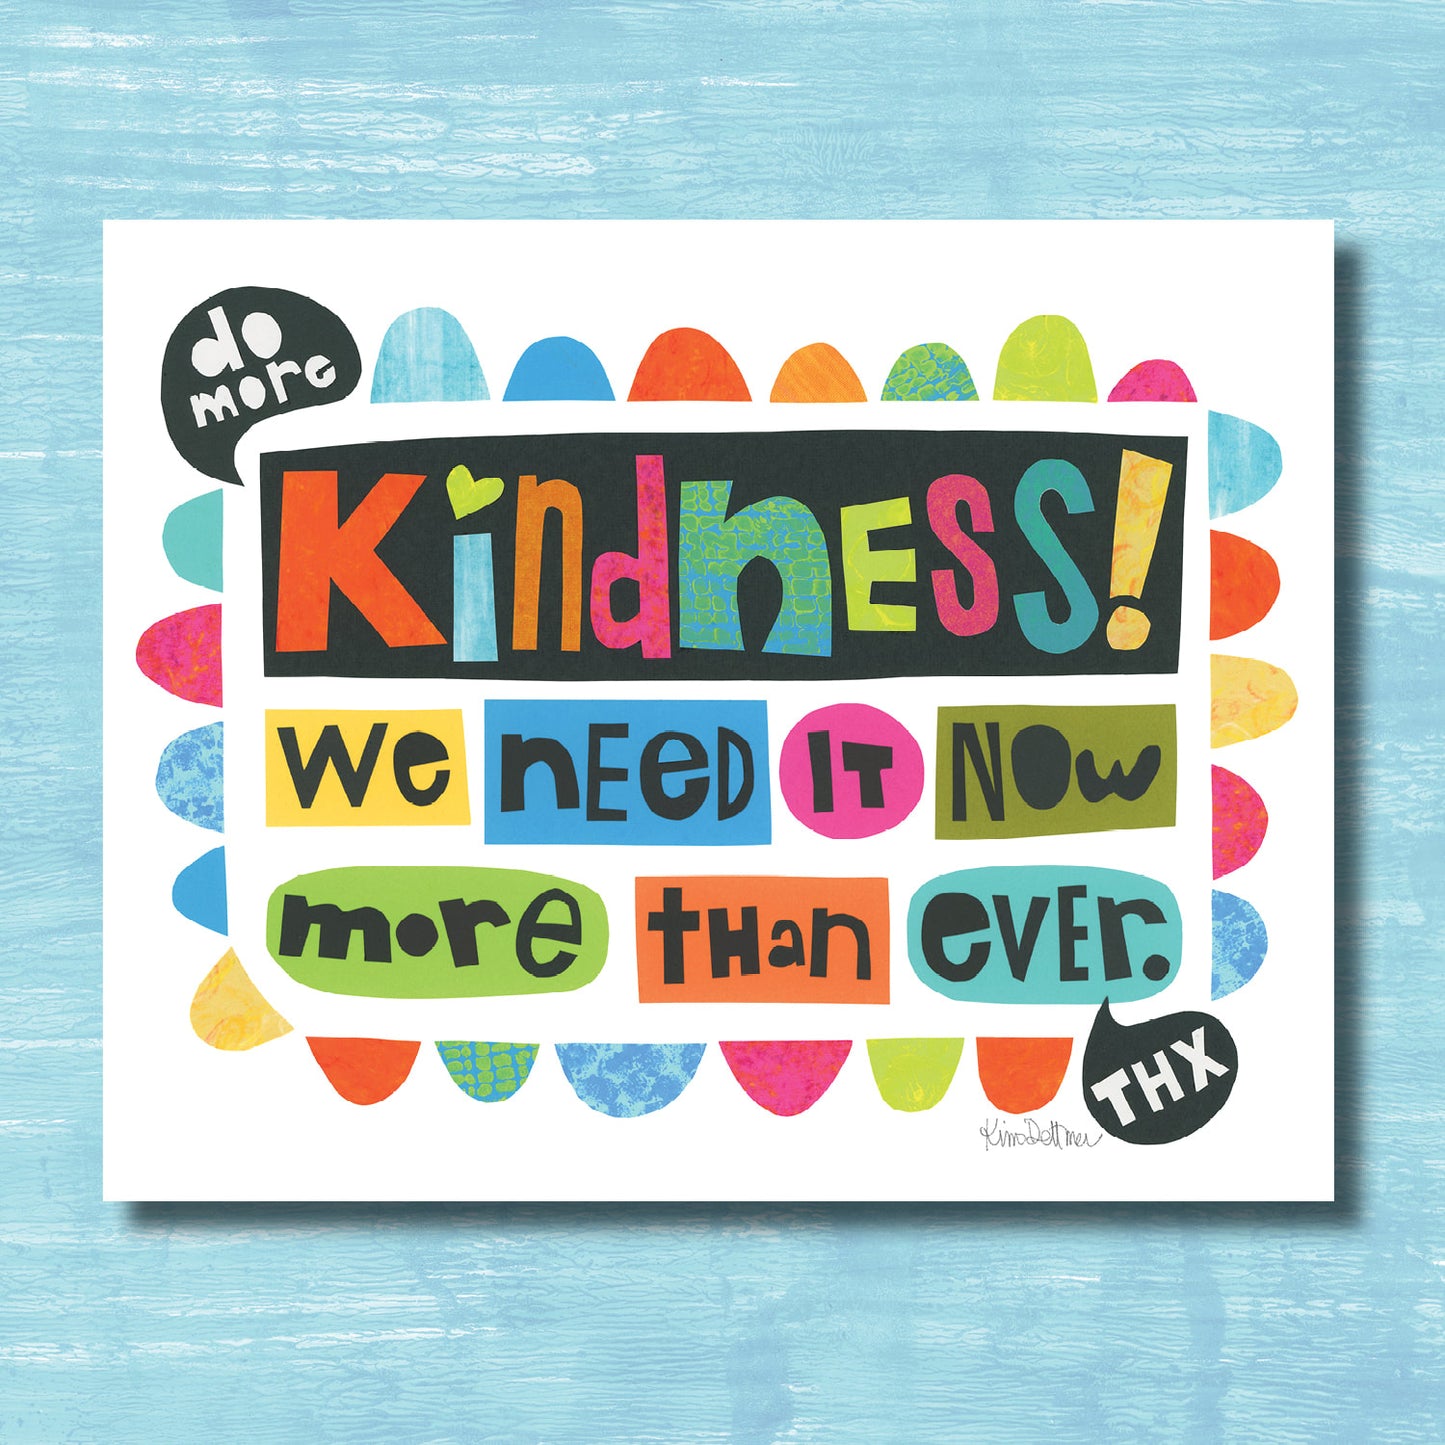 Do More Kindness (print)